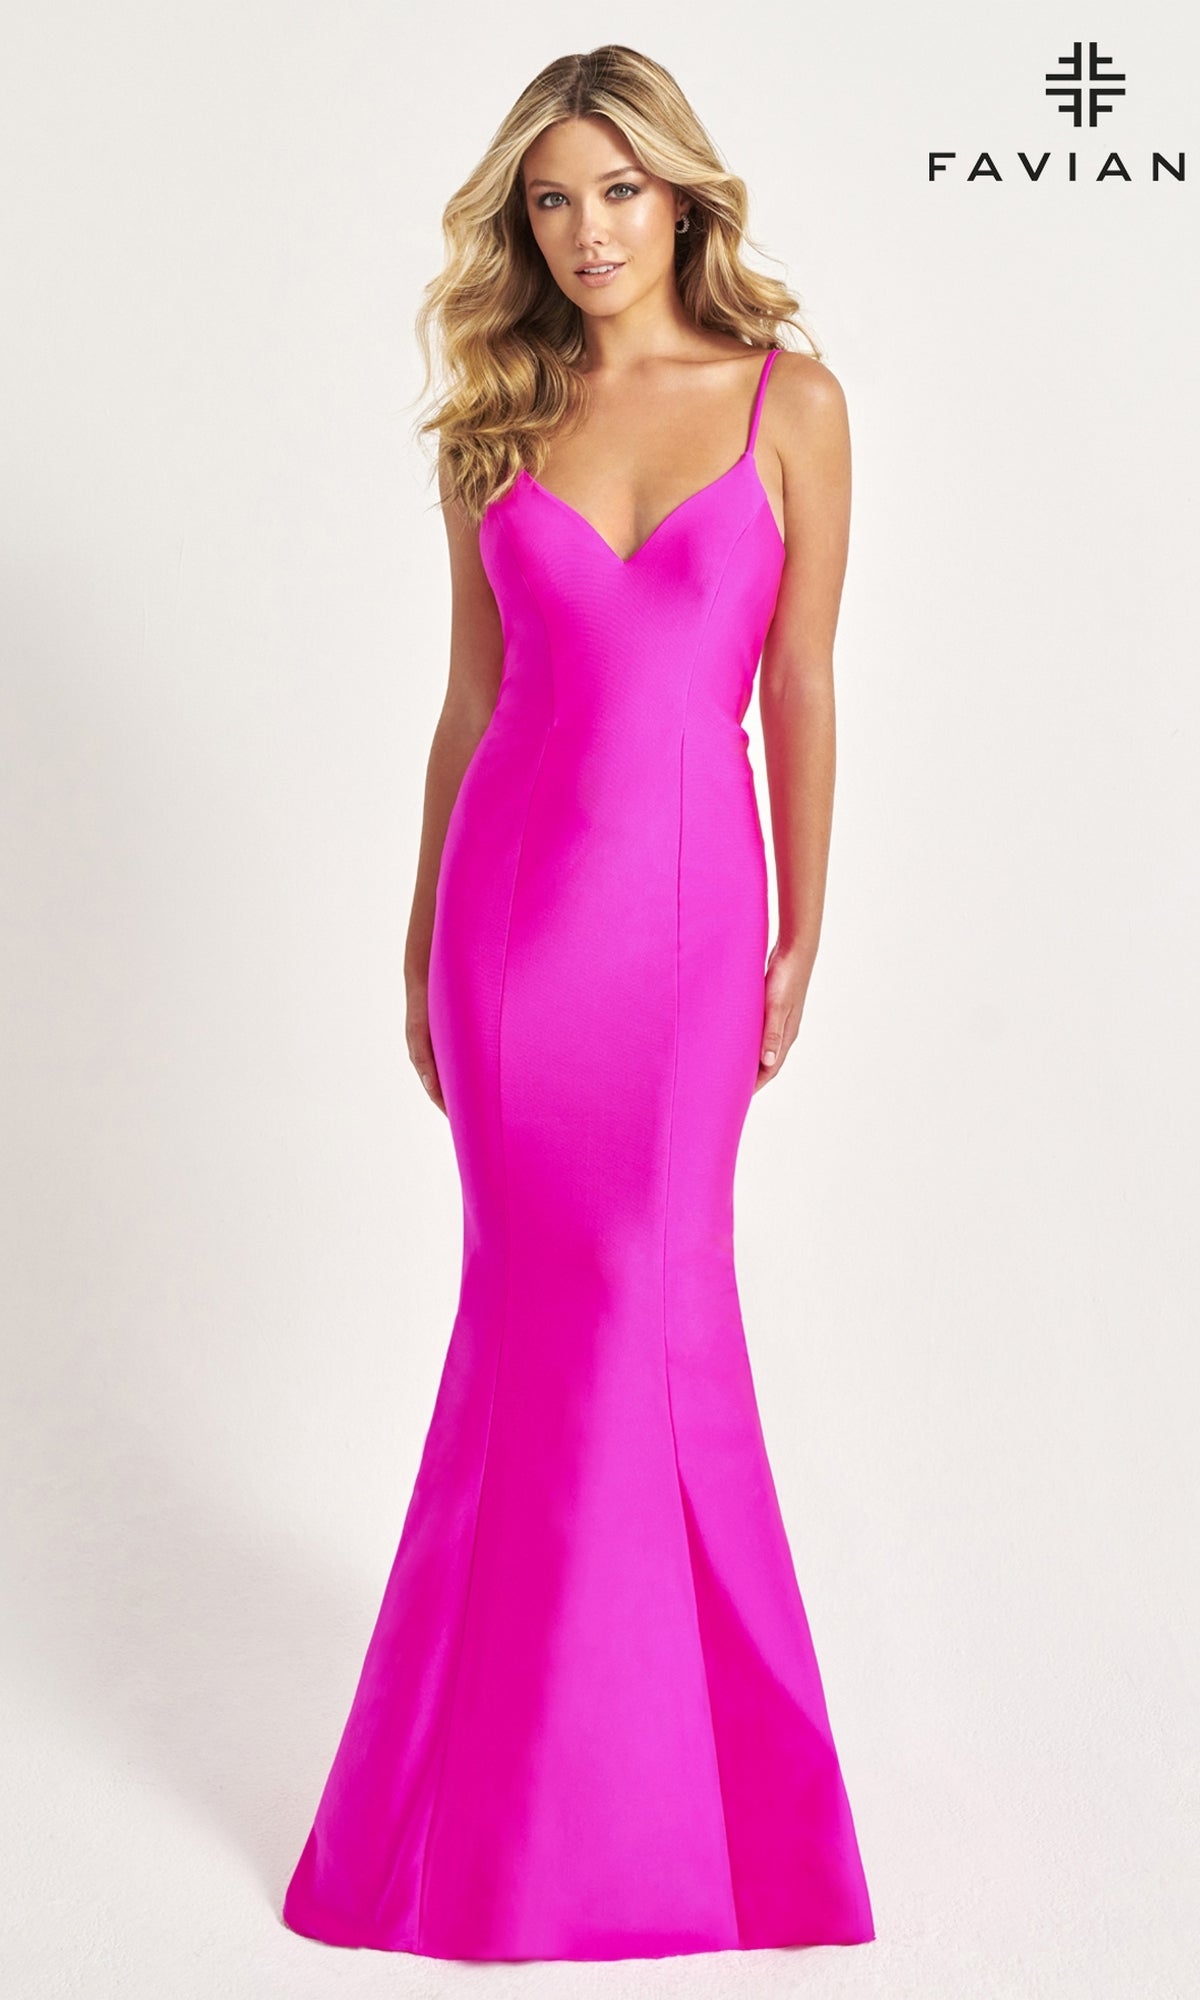 Faviana Classic Mermaid Long Prom Dress 11047